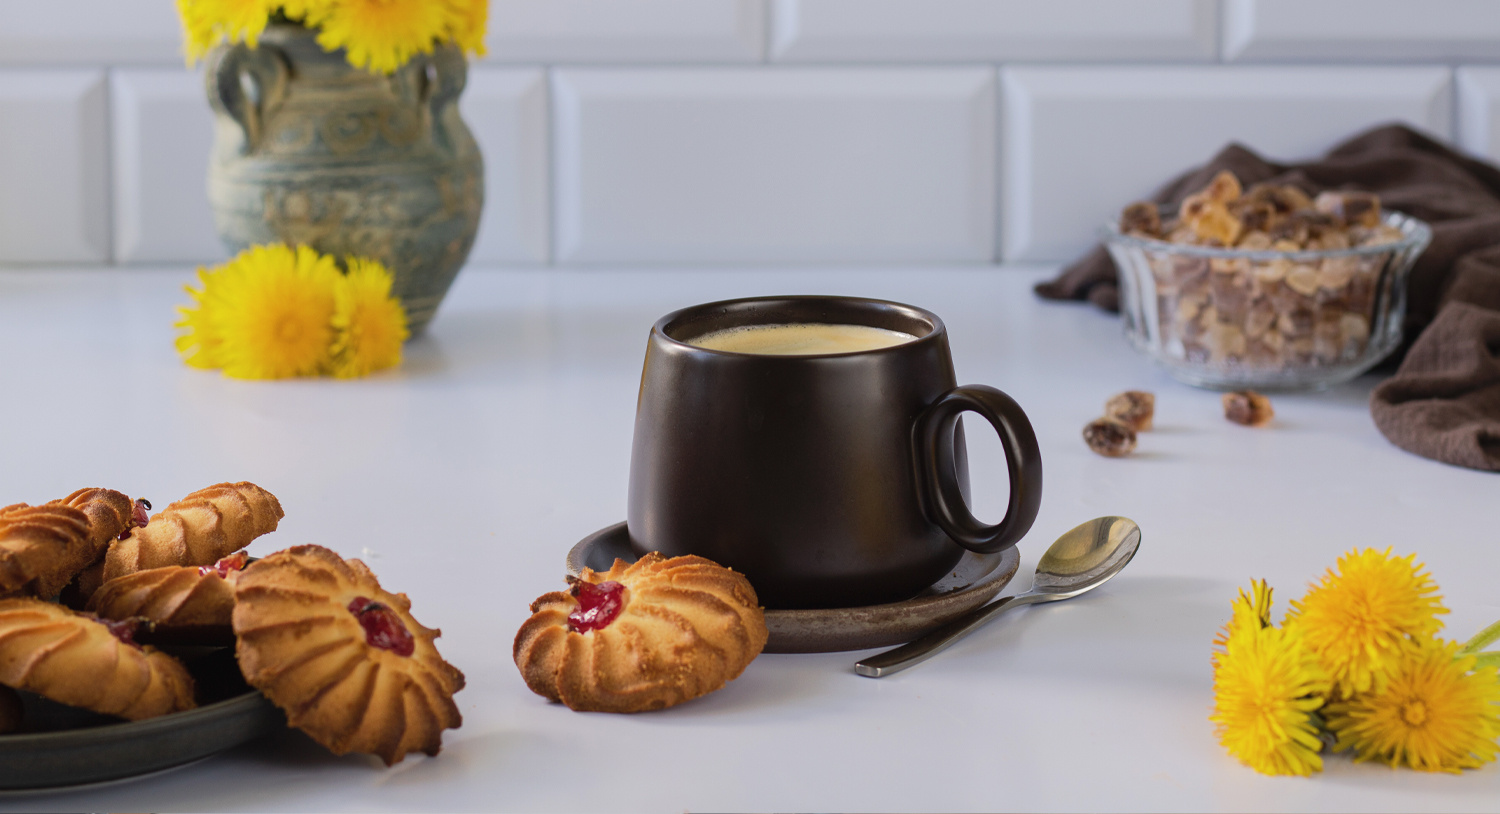 filiżanka-z-kawą-kubek-z-kawą-kawa-czarna-ciasteczka-biszkopty-kwiaty-aranżacja-blog